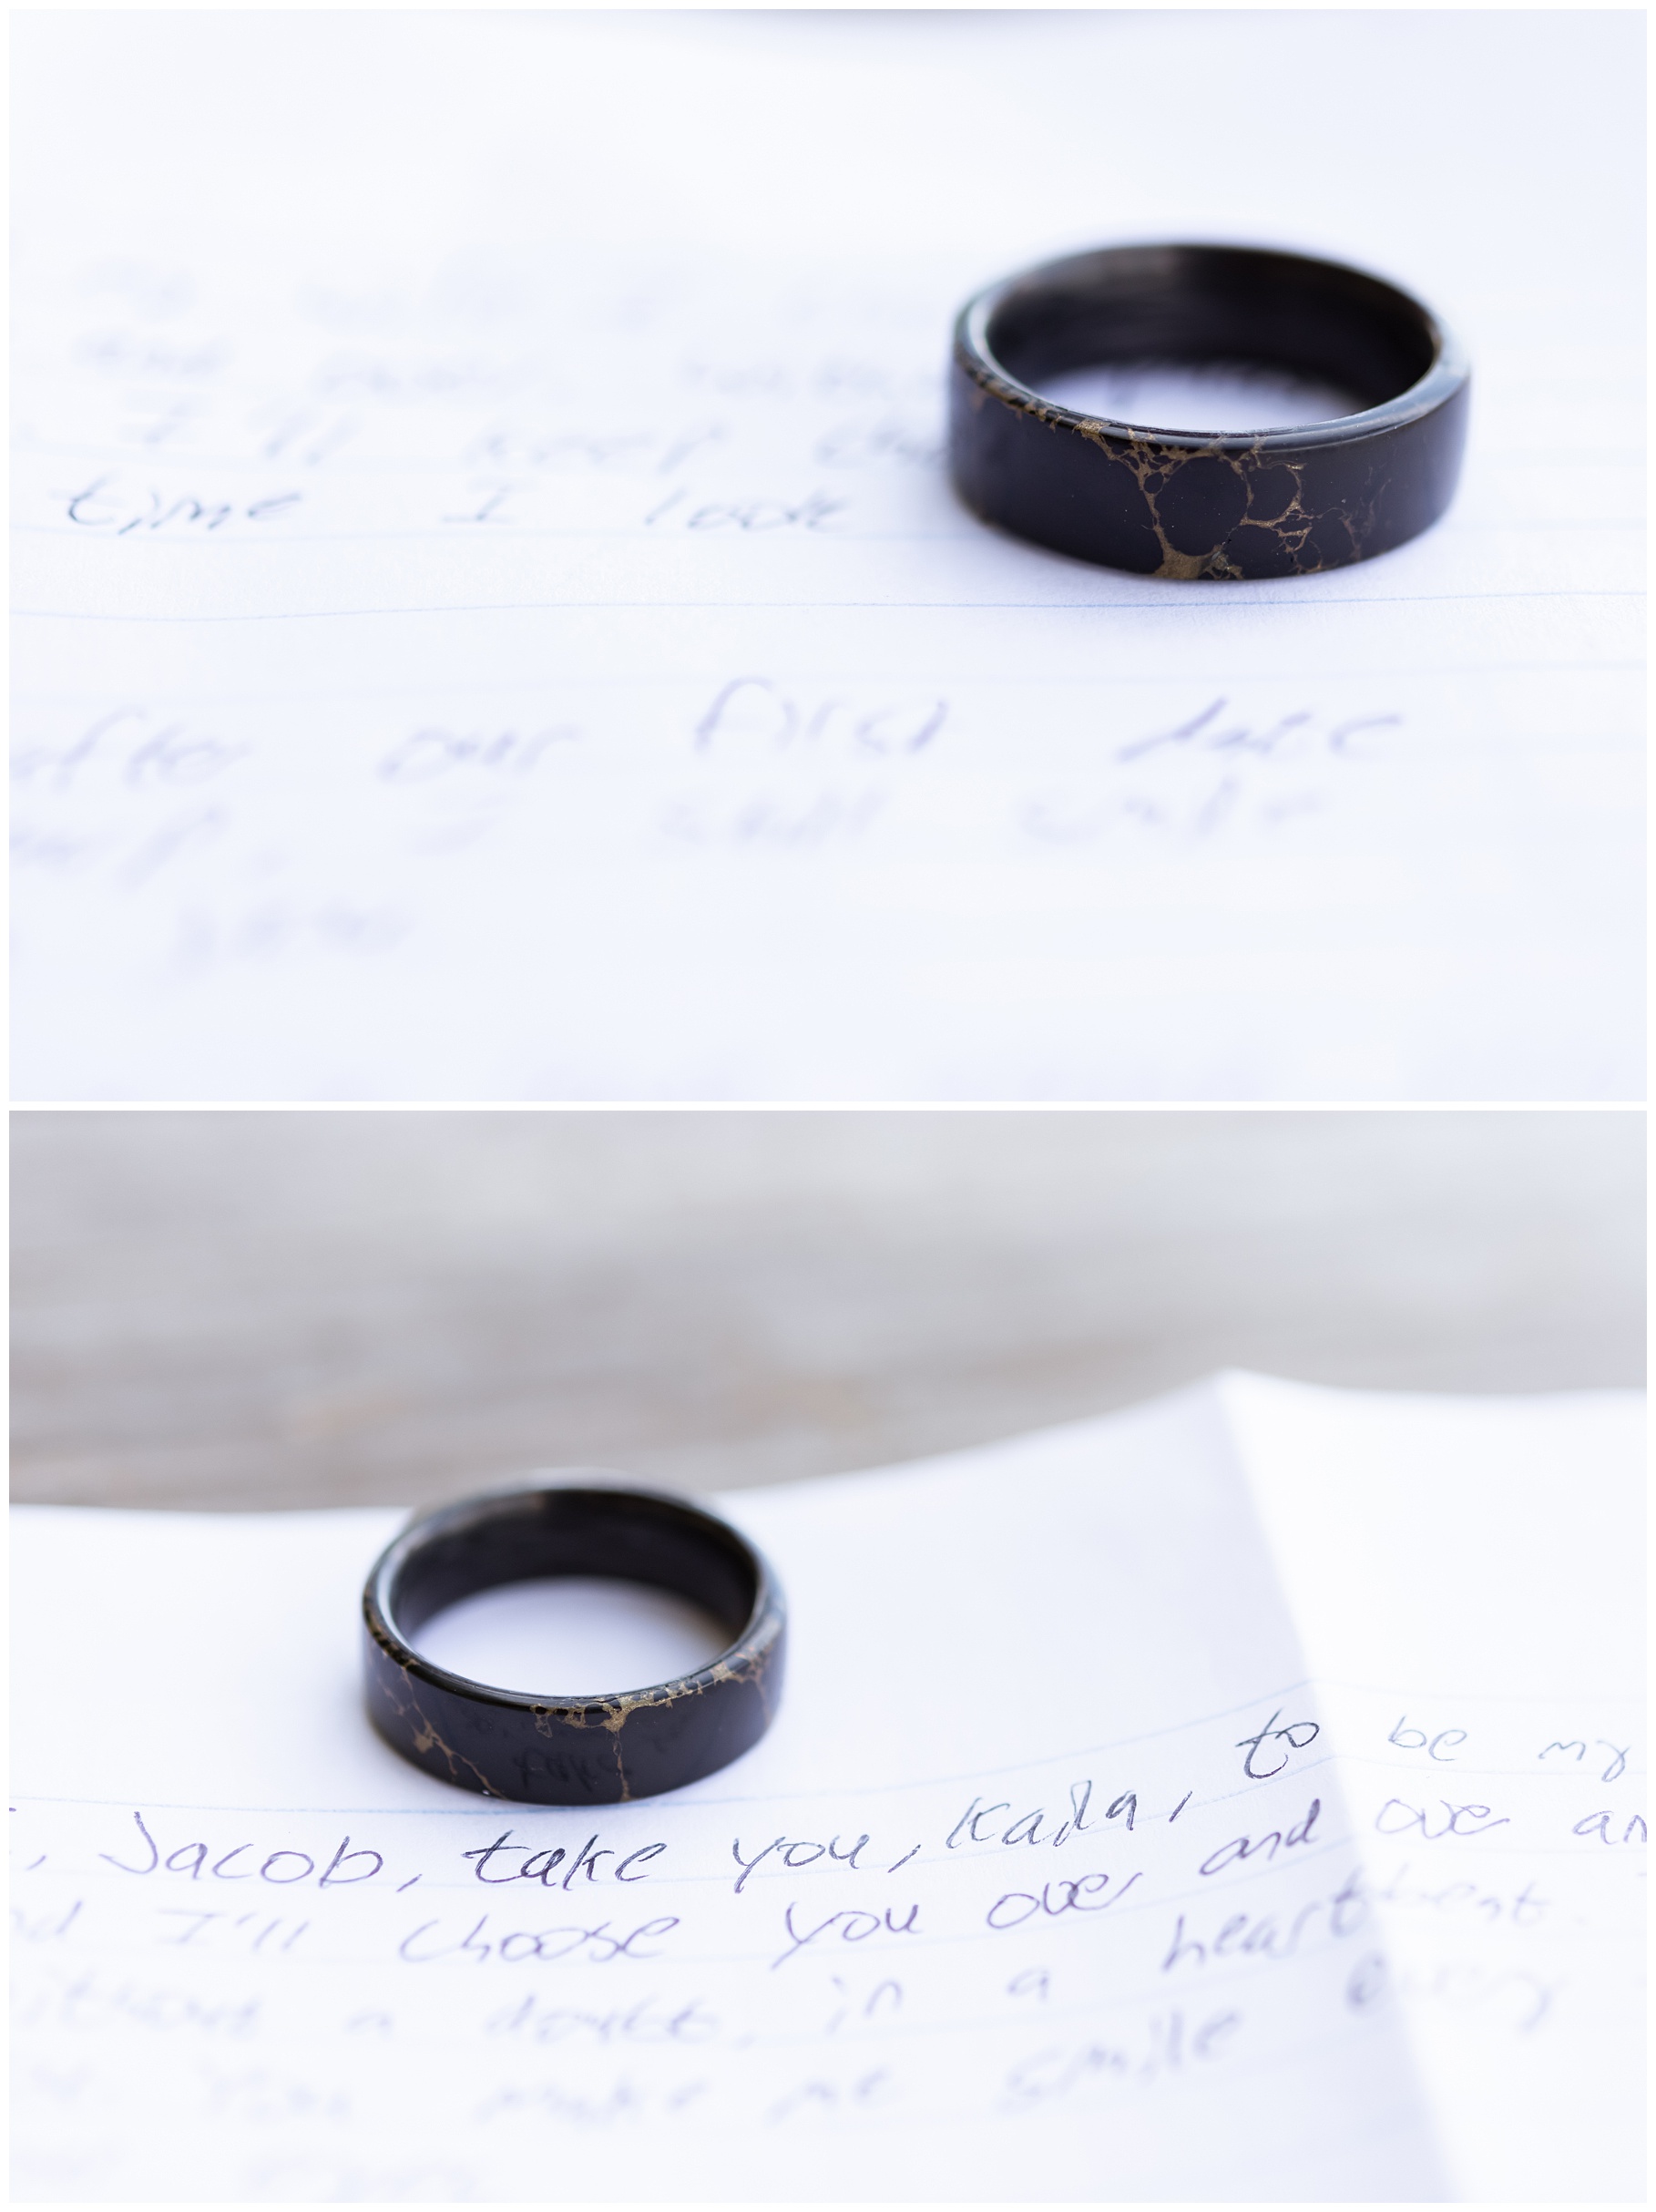 Men's wedding ring on vows